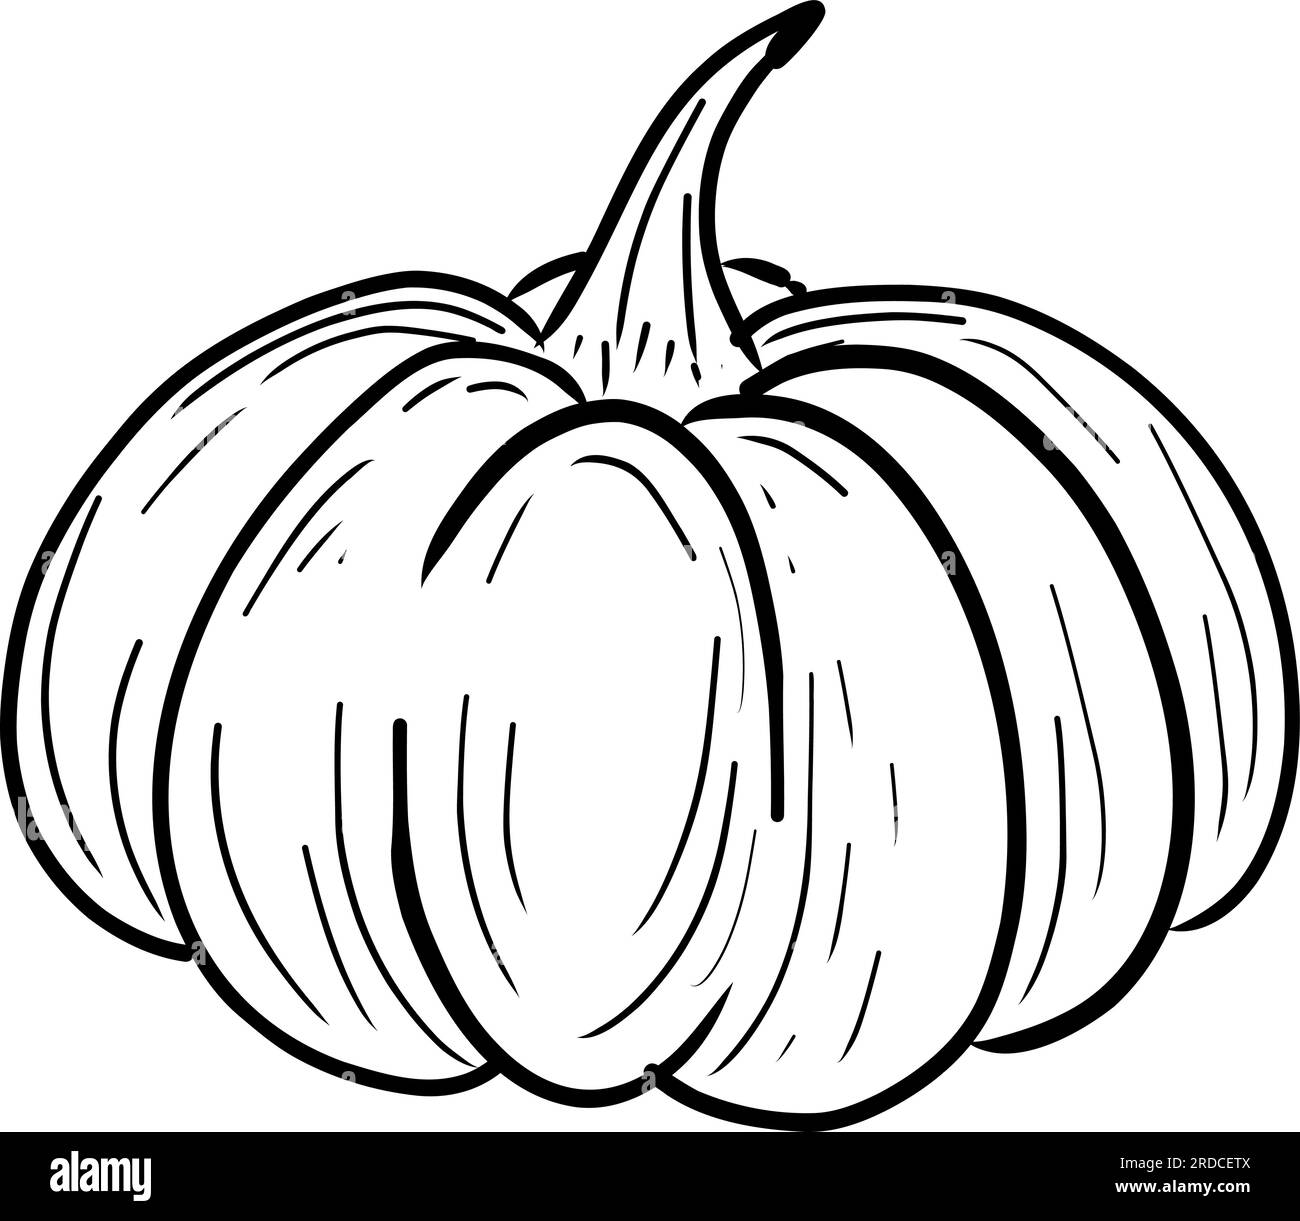 draw pumpkin ball line art for halloween Stock Vector